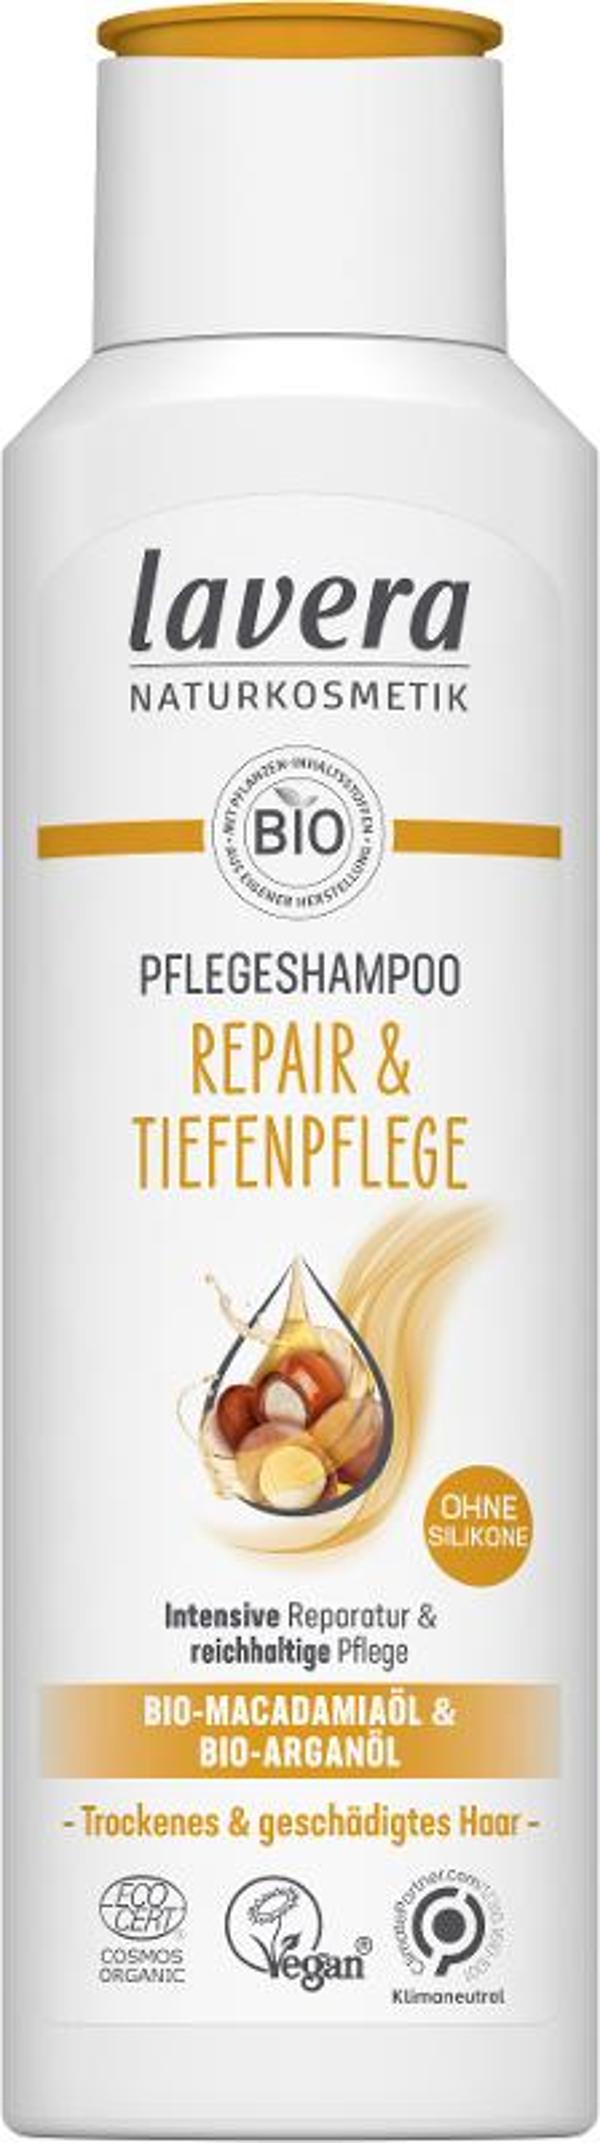 Produktfoto zu Repair & Pflegeshampoo, 250 ml